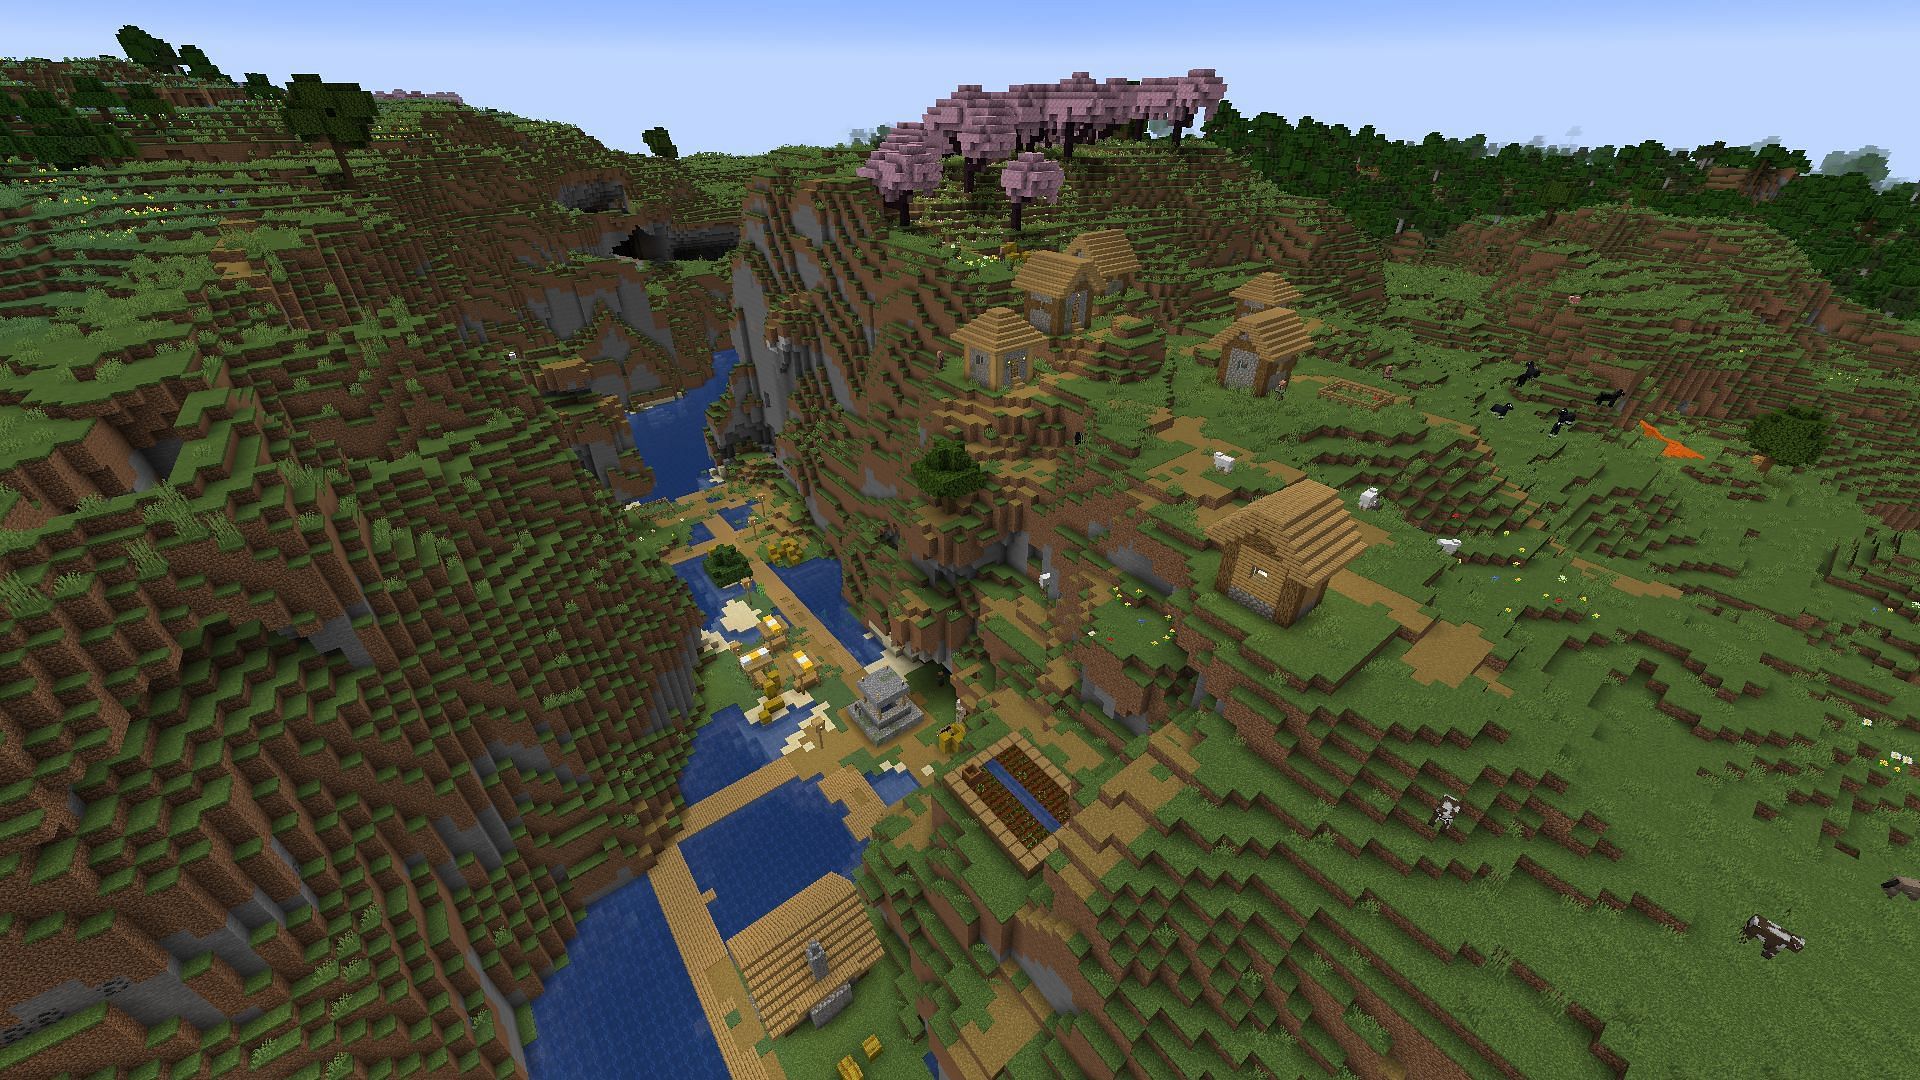 Игроки Minecraft могут исследовать это сид, чтобы найти деревни, аванпосты и древние города (Изображение взято с Mojang)